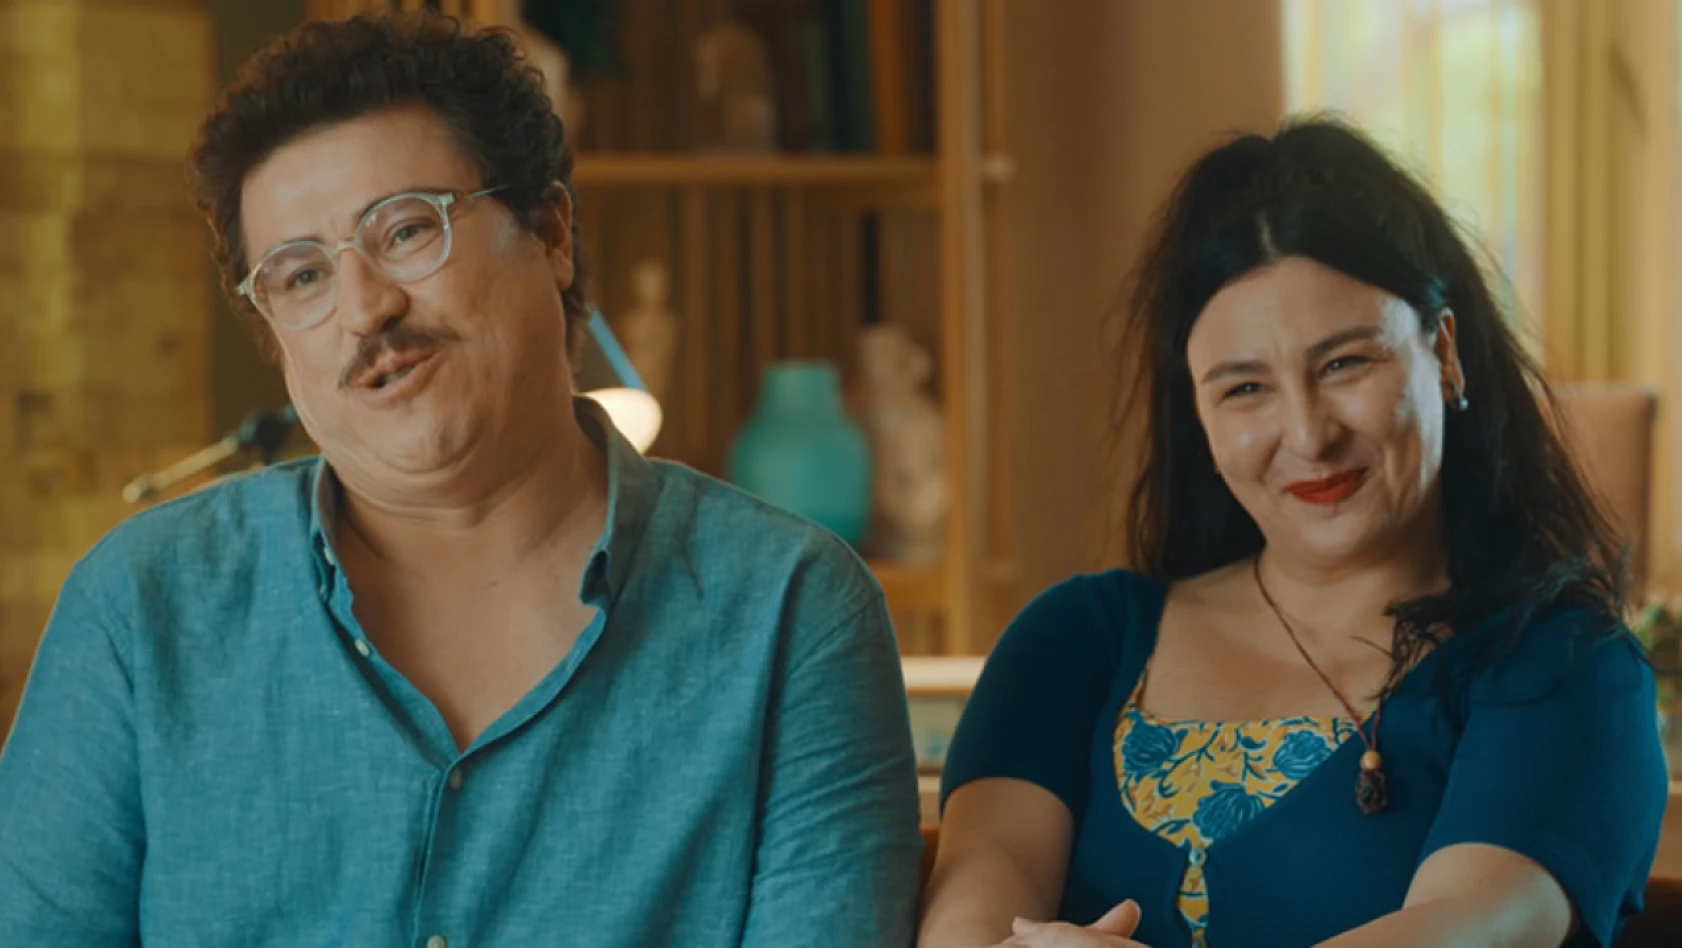 İbrahim Büyükak ve Yasemin Sakallıoğlu'nu buluşturan 'Mutluyuz' filminden ilk teaser yayınlandı